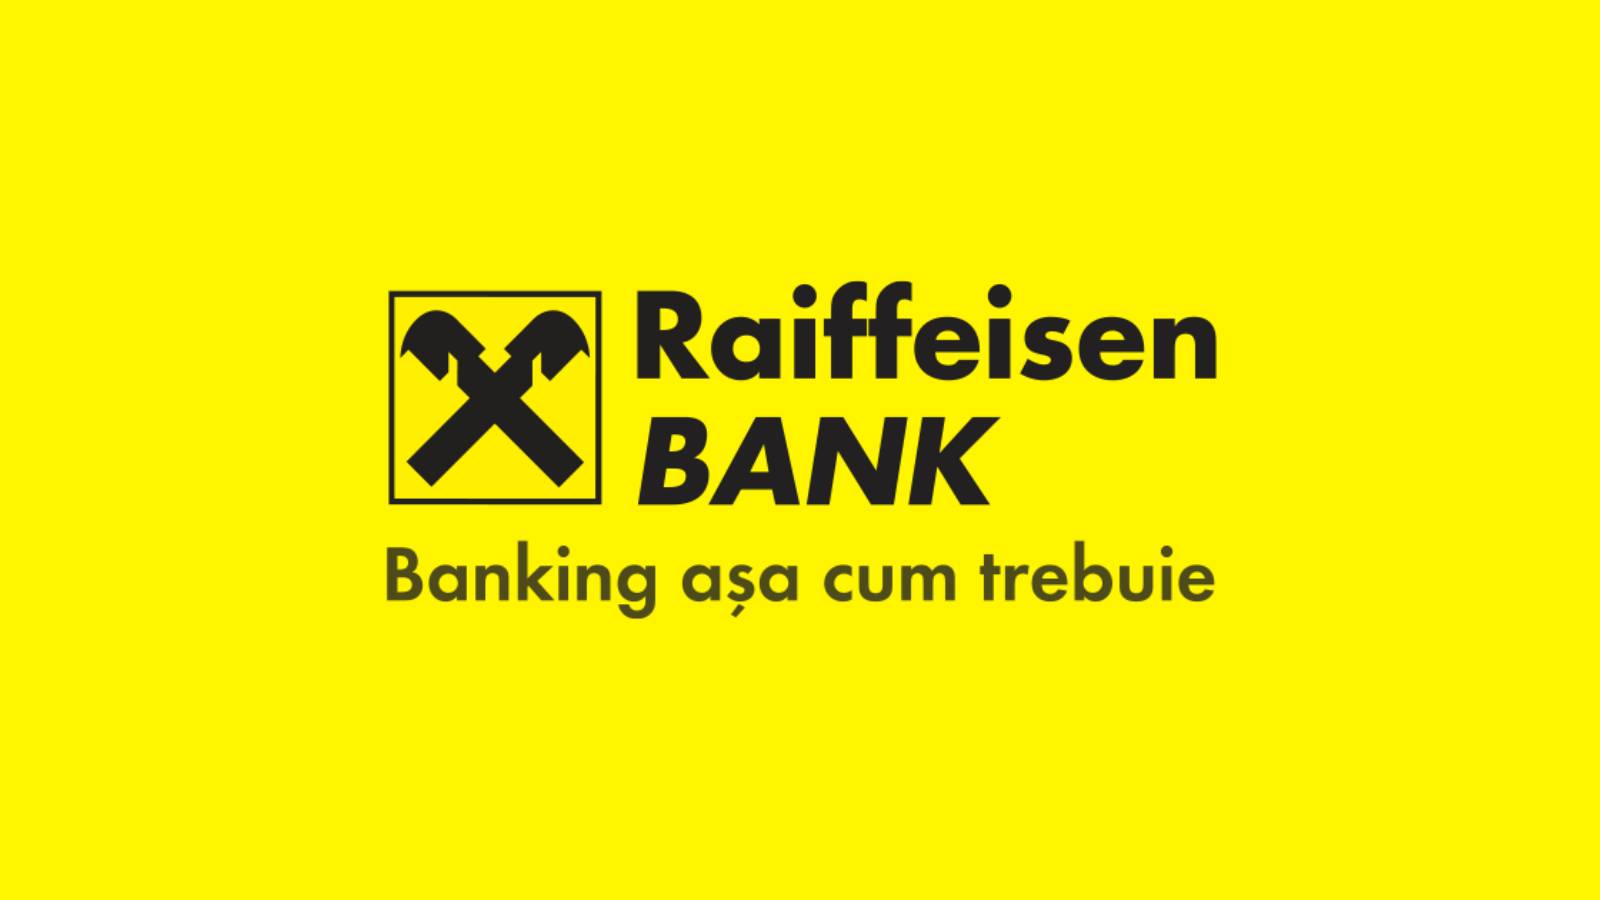 Raiffeisen Bank treaba